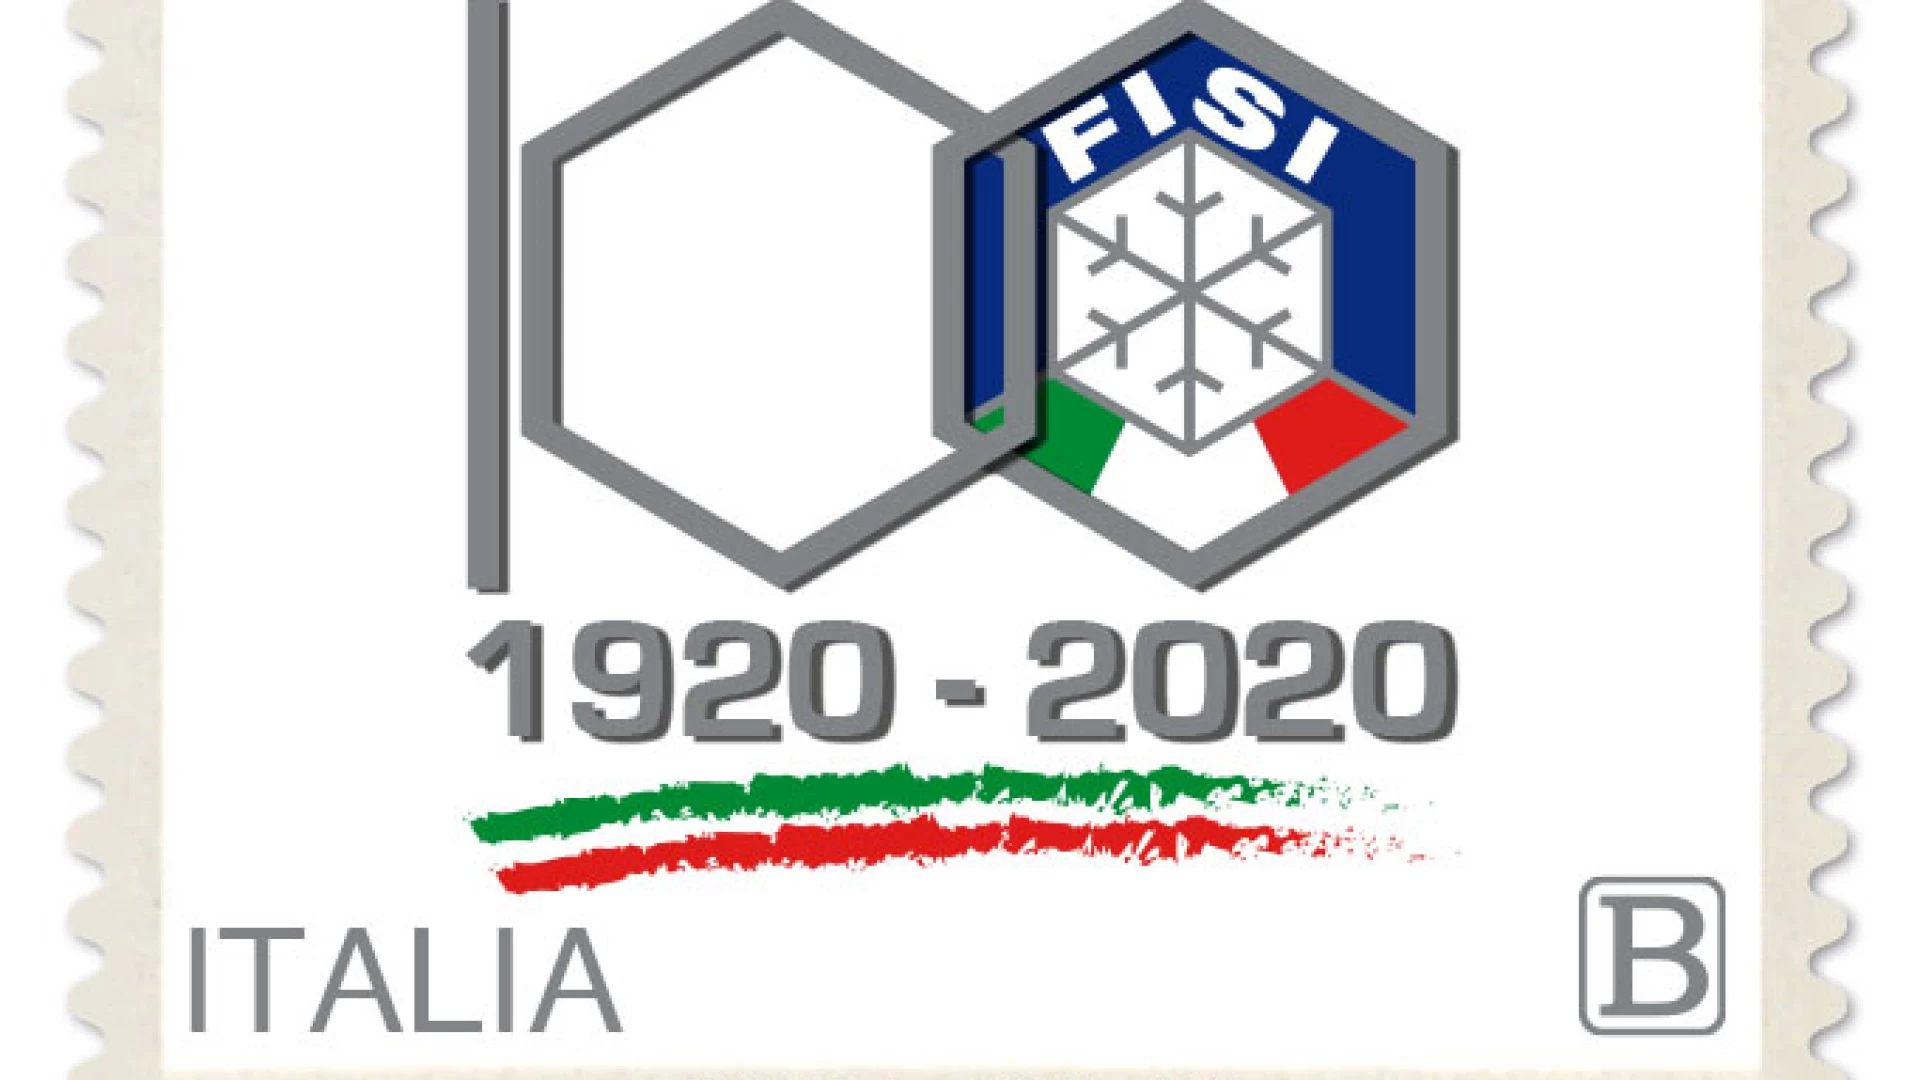 Isernia: Poste Italiane dedica un francobollo alla Federazione Italiana Sport Invernali - FISI